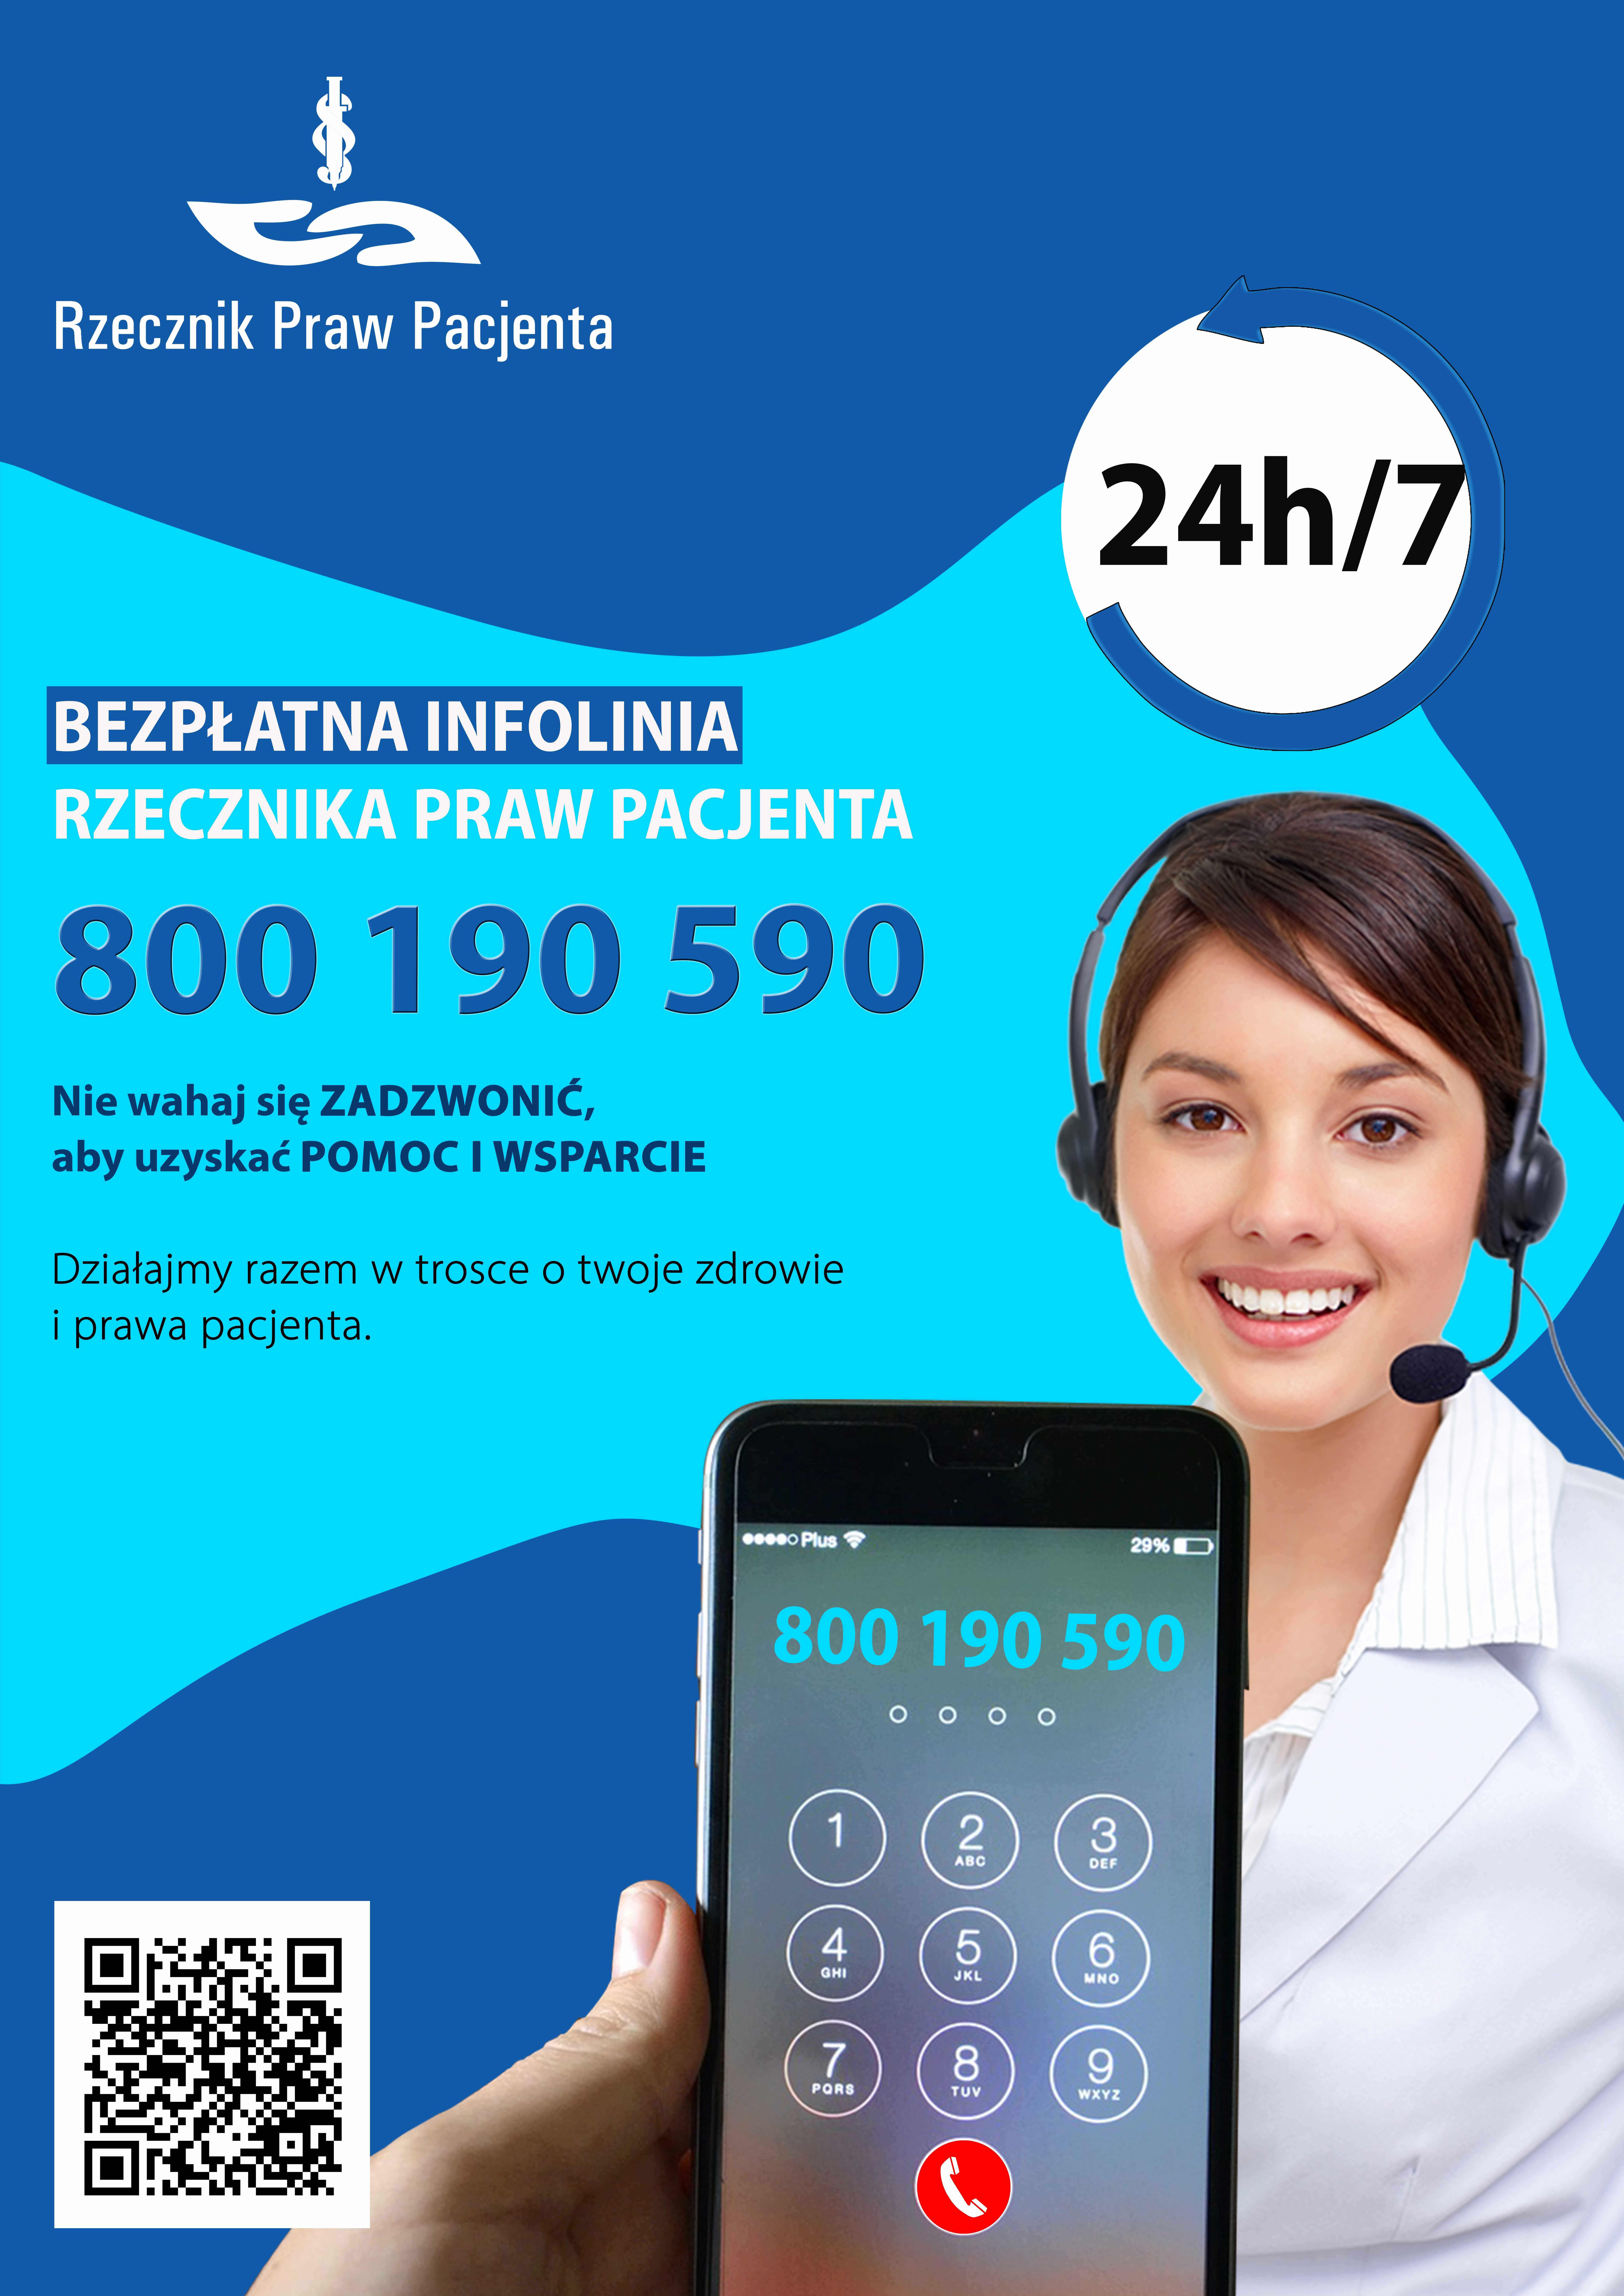 Plakat z informacja o bezpłatnej infolinii do Rzecznia Praw Pacjenta czynnym 24h/7 pod numerem telefonu 800190590